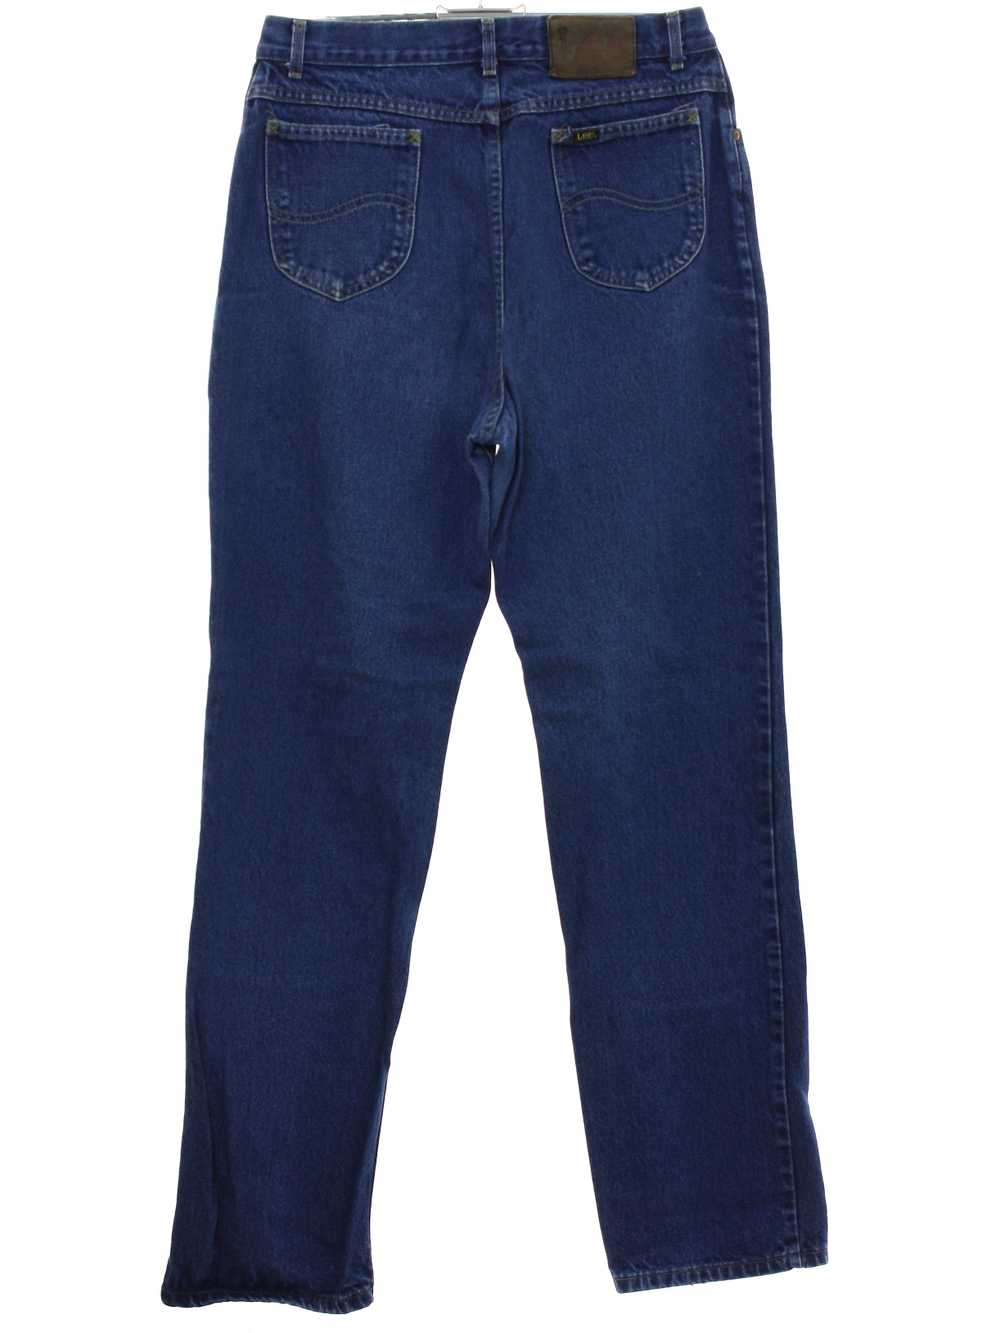 1980's Lee Womens Lee Denim Jeans Pants - image 3